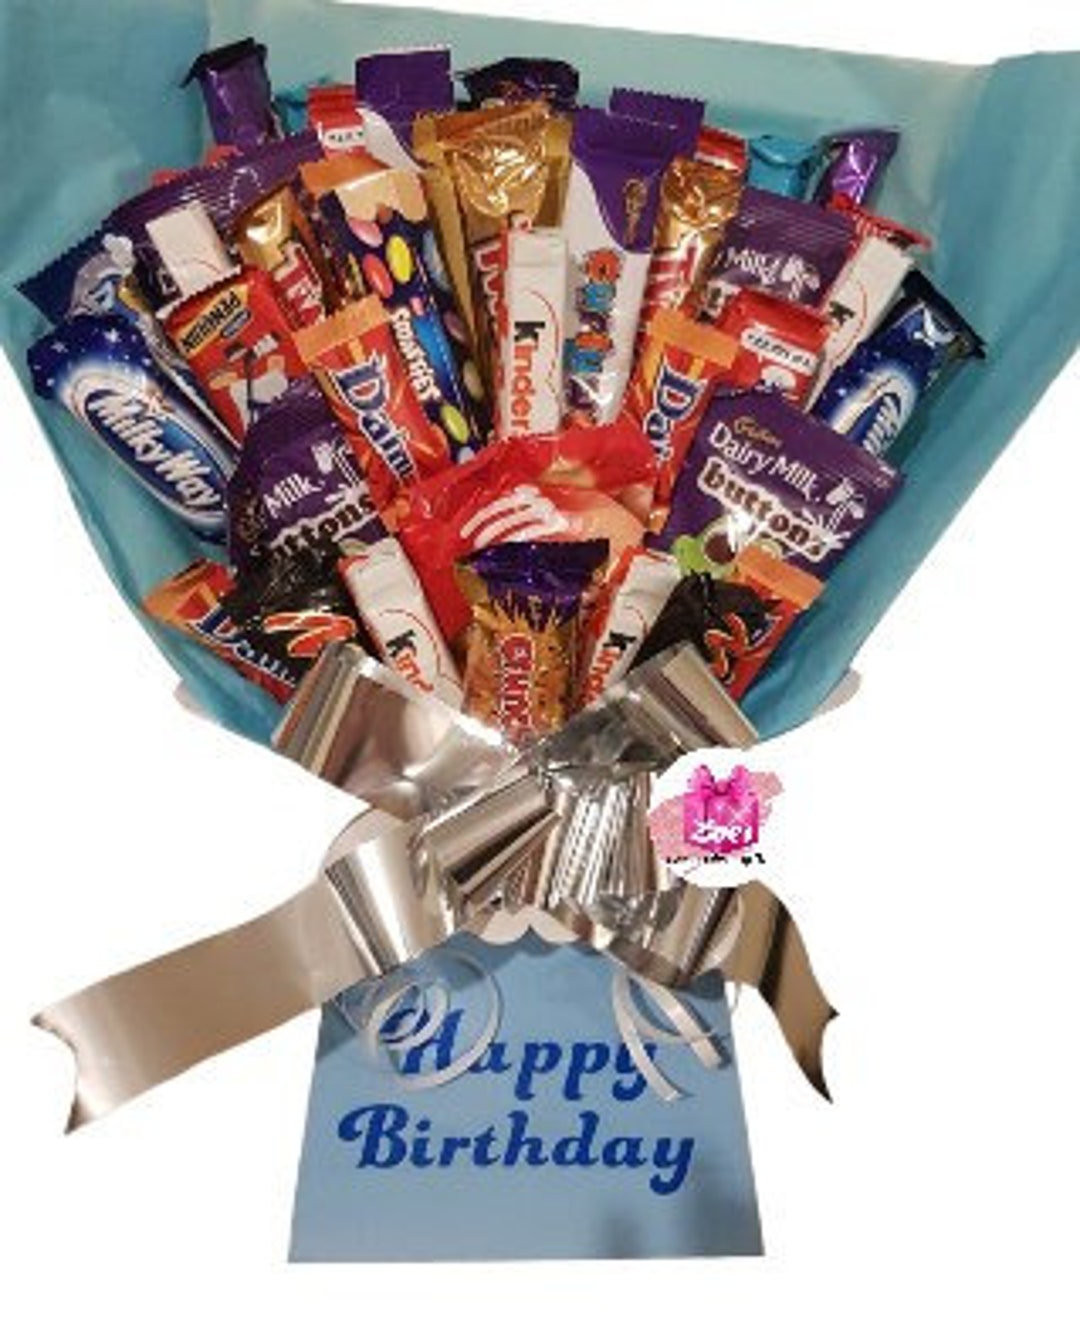 Panier Bouquet Chocolat, cadeau idéal pour la Saint-Valentin pour lui ou  elle -  France